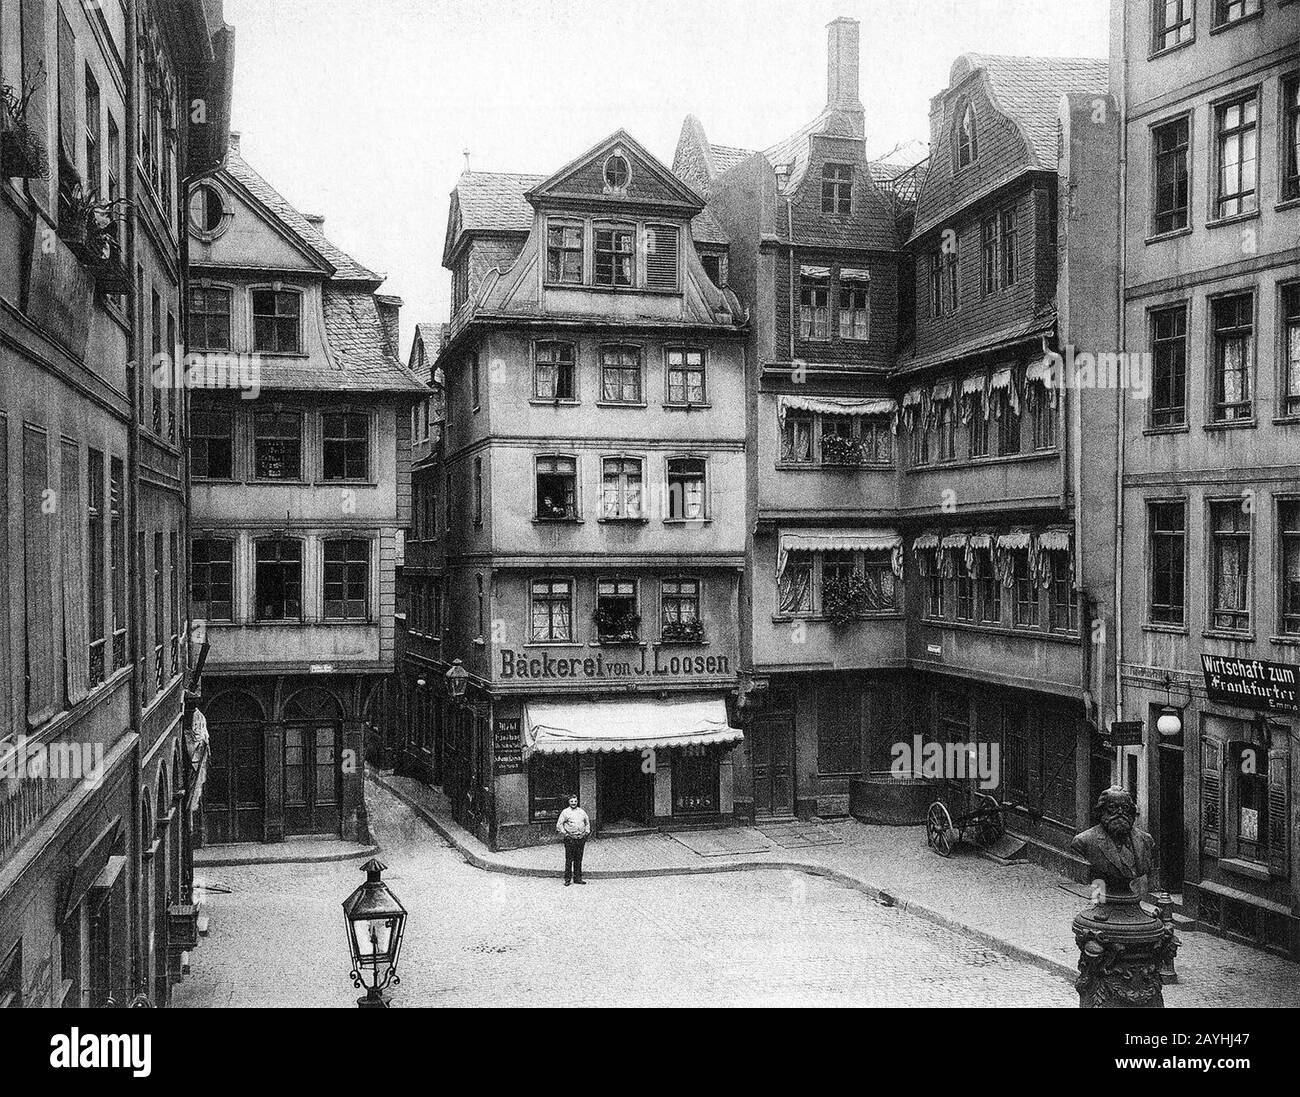 Frankfurt Altstadt-Huehnermarkt-1900. Stock Photo